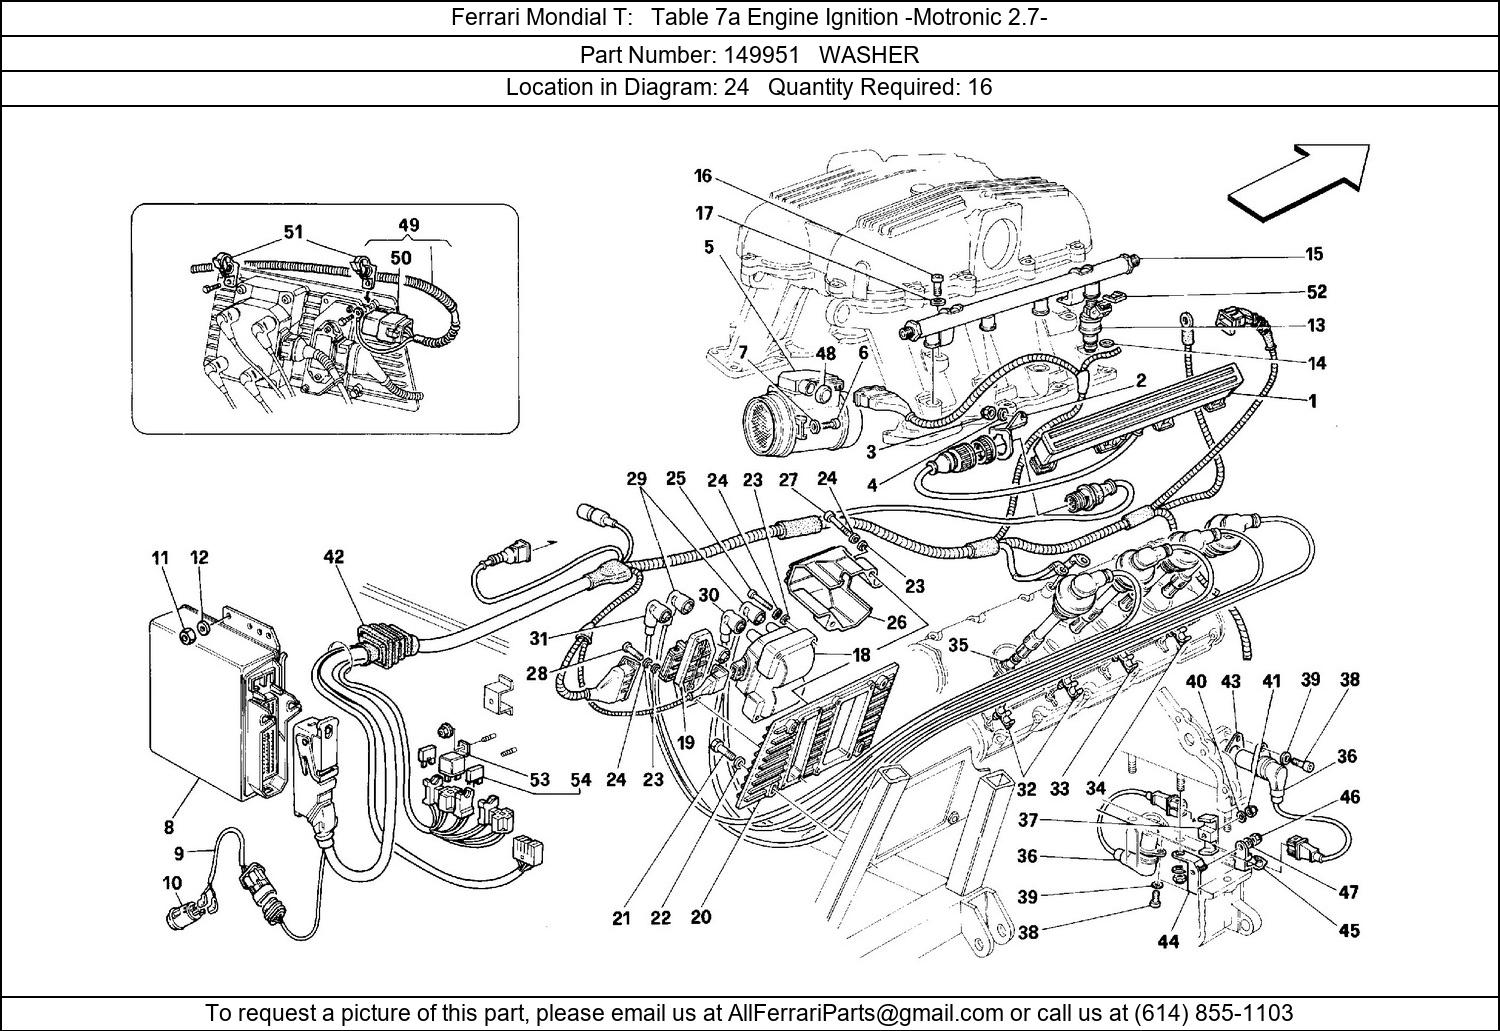 Ferrari Part 149951